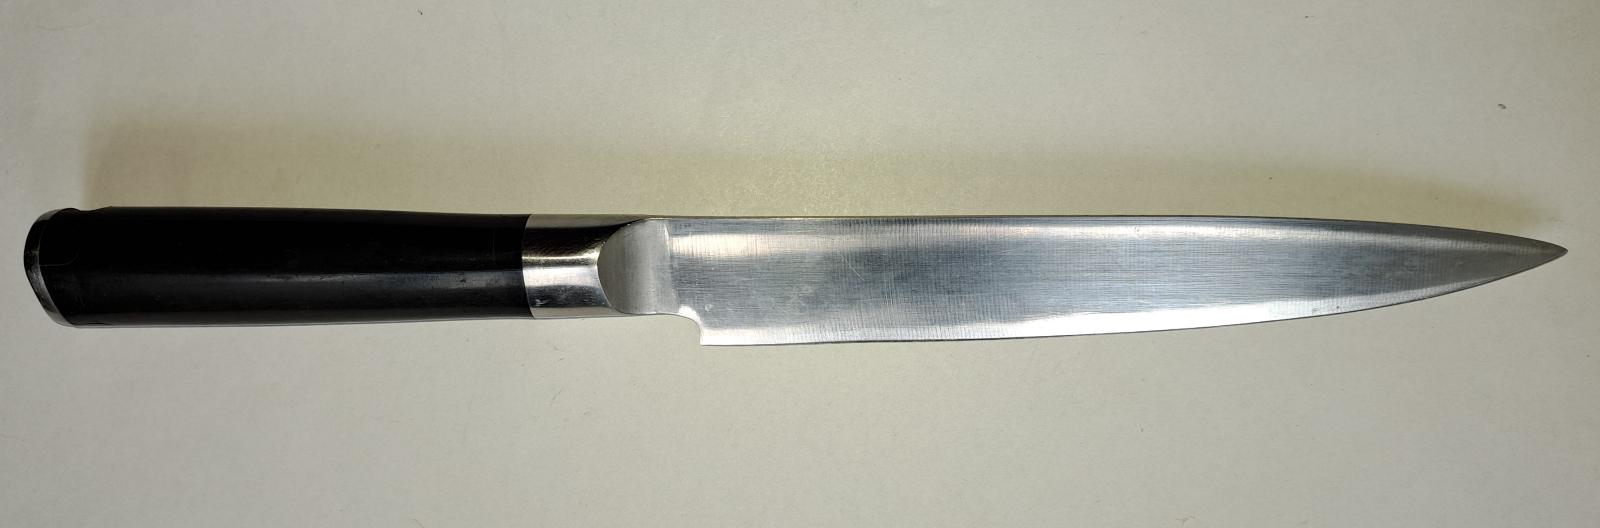 Vyrezávací nôž vyrobený z vysoko kvalitnej nerezovej ocele X50CrMoV15 - Vybavenie do kuchyne